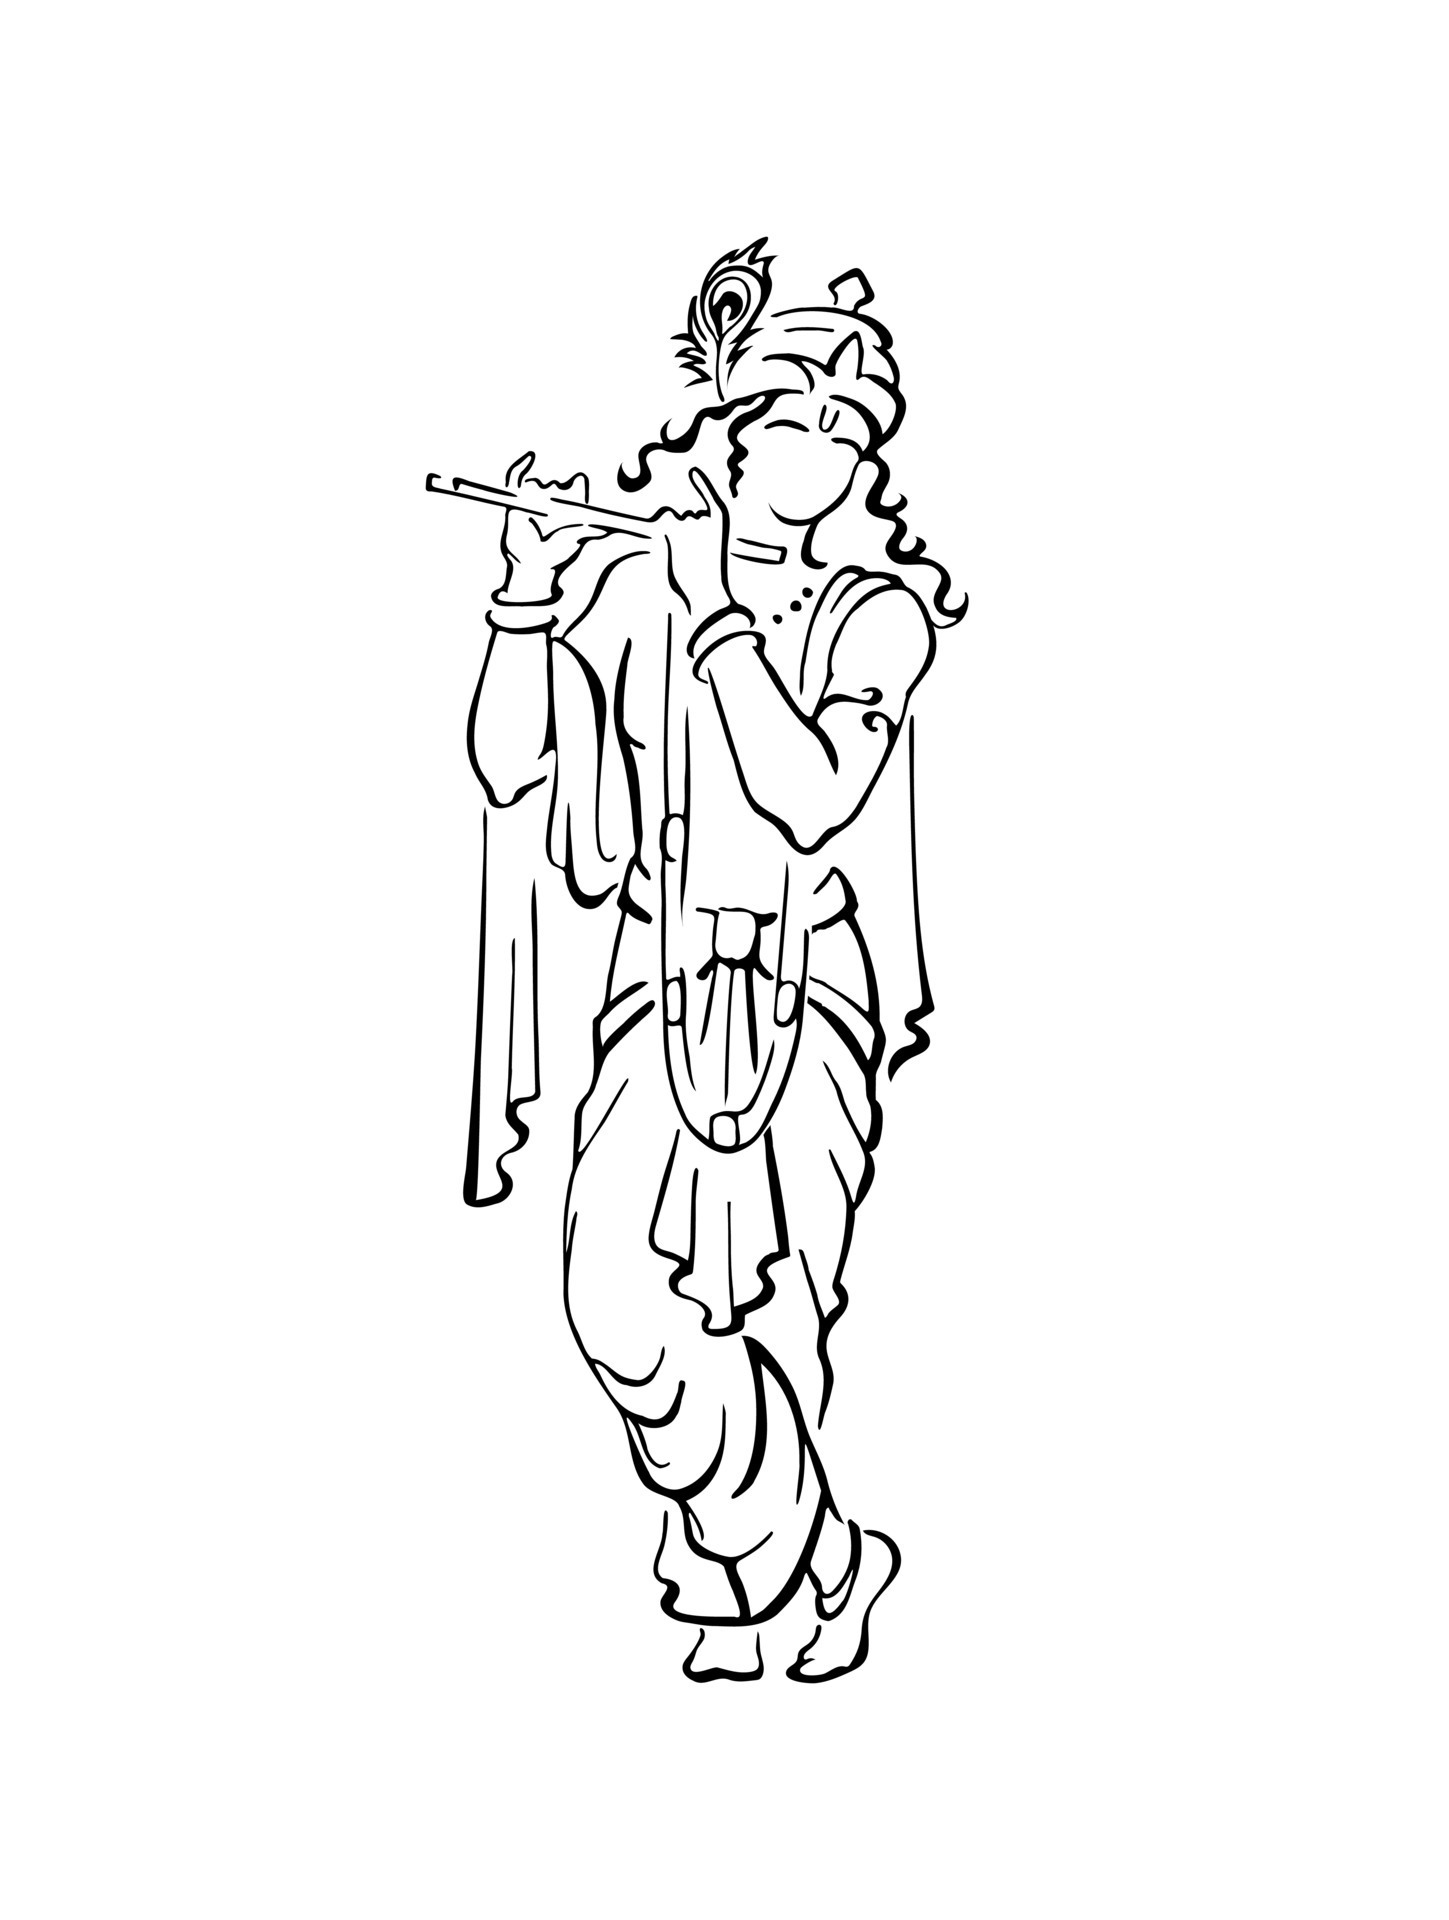 Lord Krishna face pencildrawinggod baal Krishna drawingTaposhiartsAcademy   YouTube